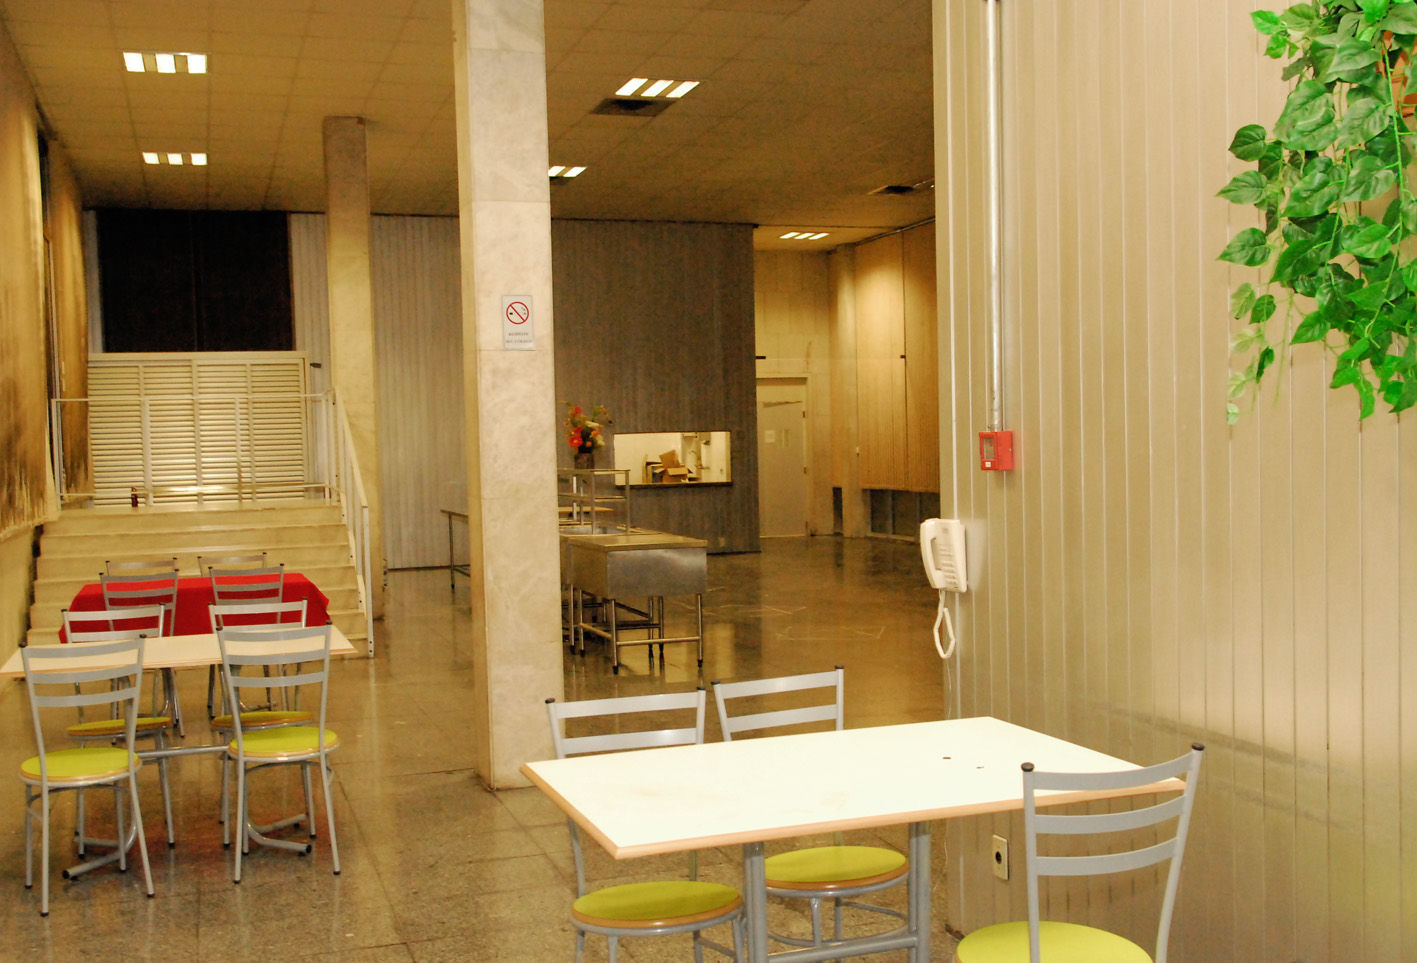 Restaurante da Alesp <a style='float:right;color:#ccc' href='https://www3.al.sp.gov.br/repositorio/noticia/06-2009/Restaurante_0020.jpg' target=_blank><i class='bi bi-zoom-in'></i> Clique para ver a imagem </a>